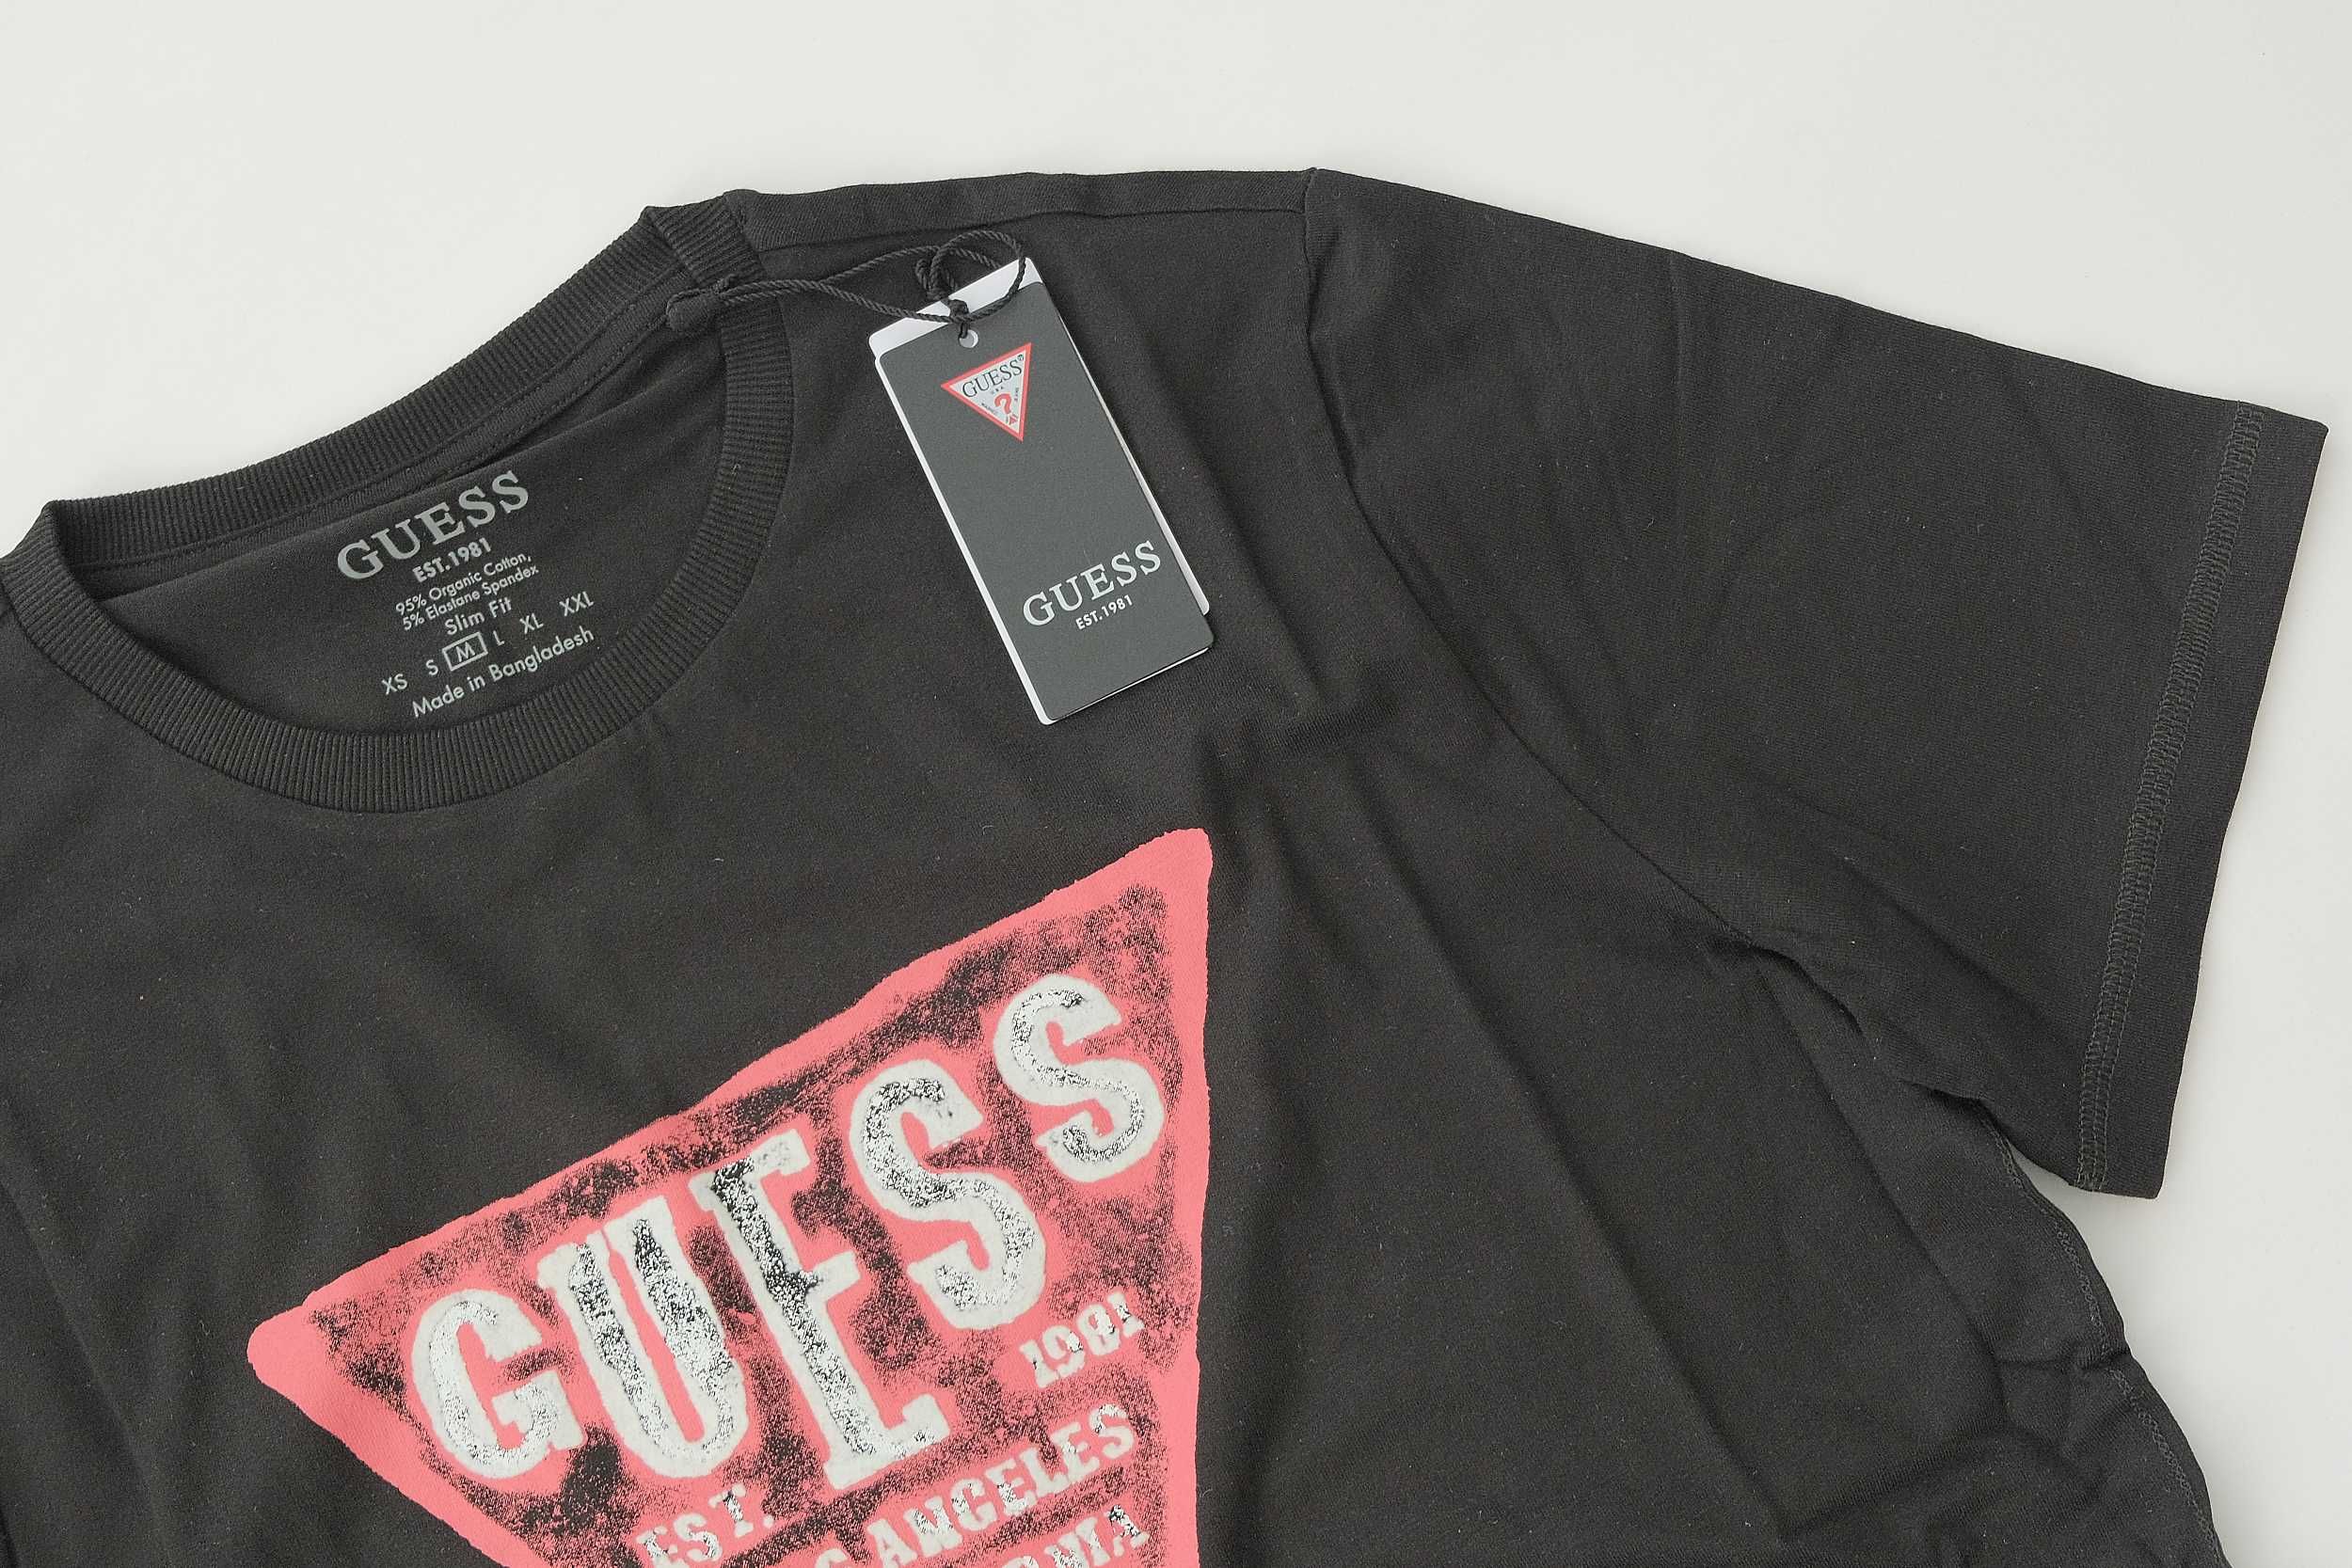 ПРОМО GUESS  М  размери-Оригинална черна тениска със щампа и лого